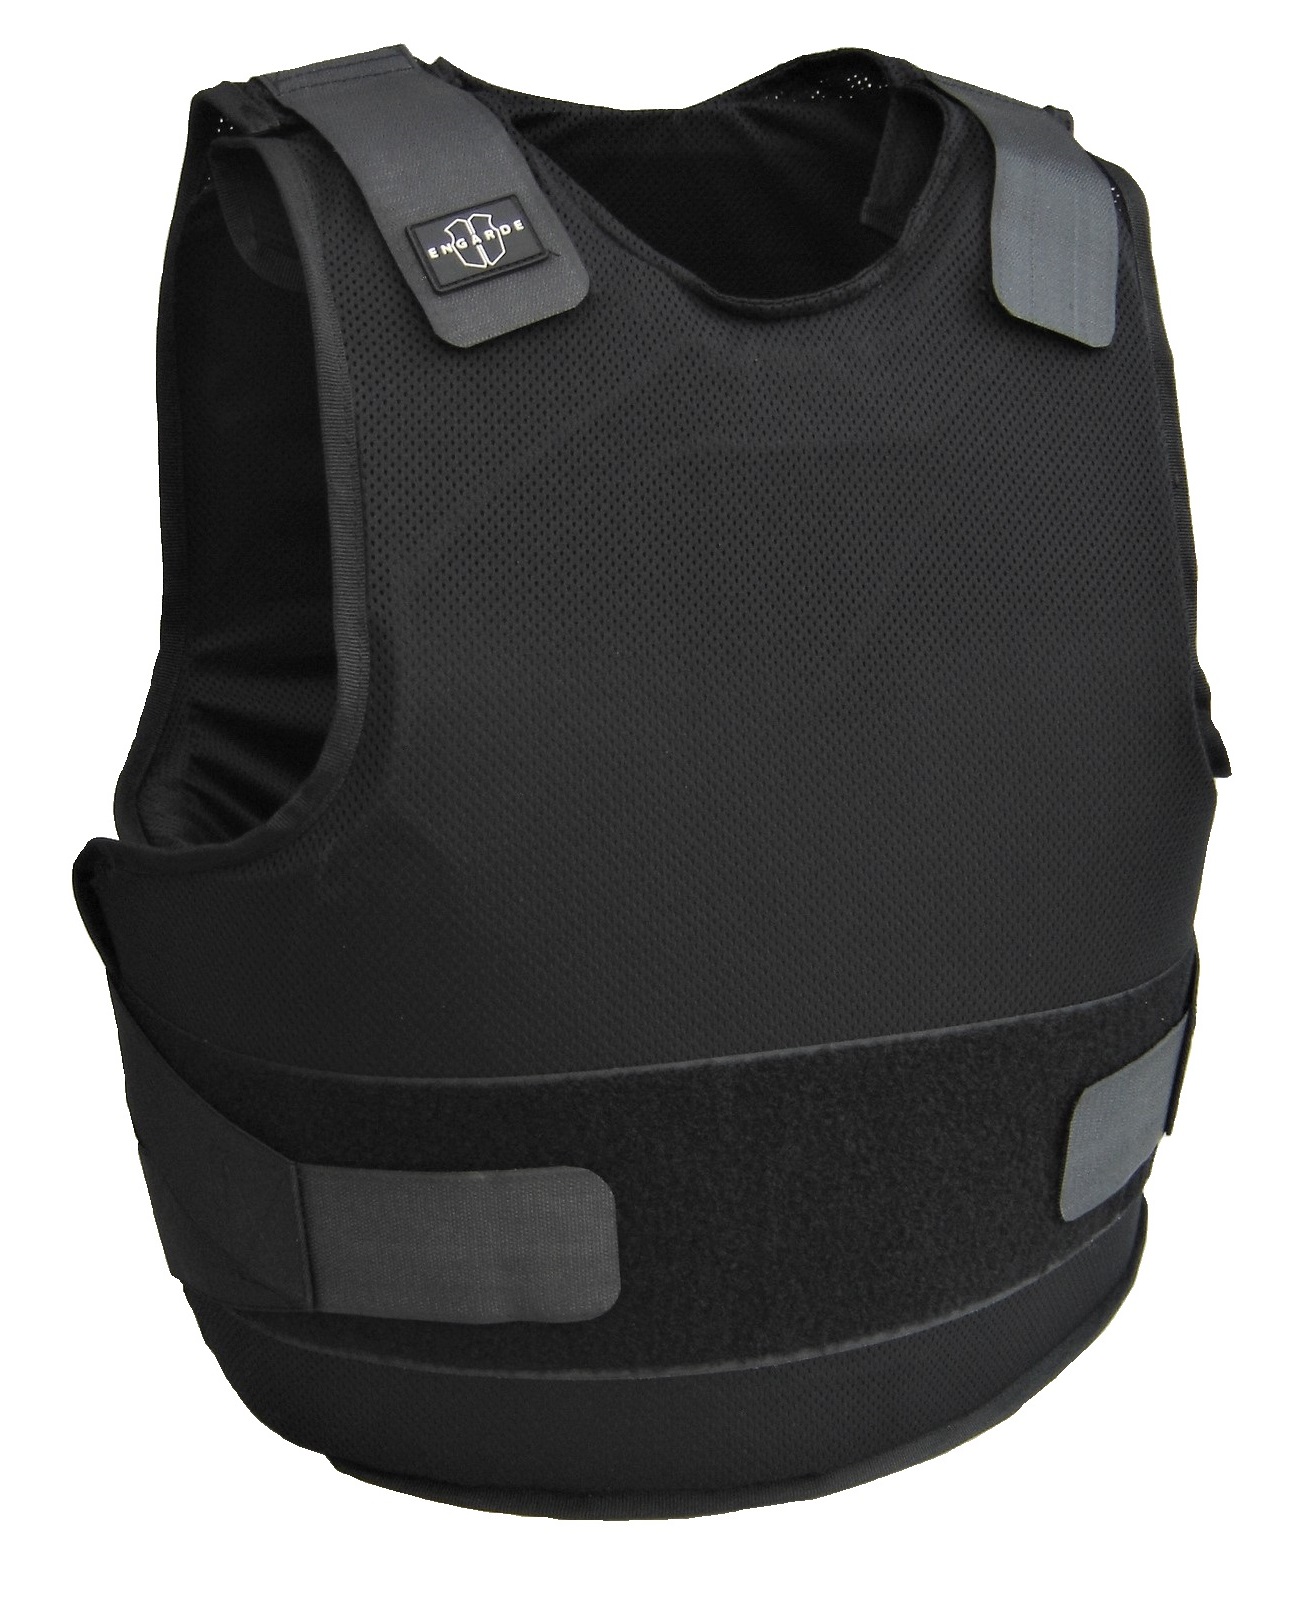 Affordable Security Bullet Resistant Vest NIJ Level II